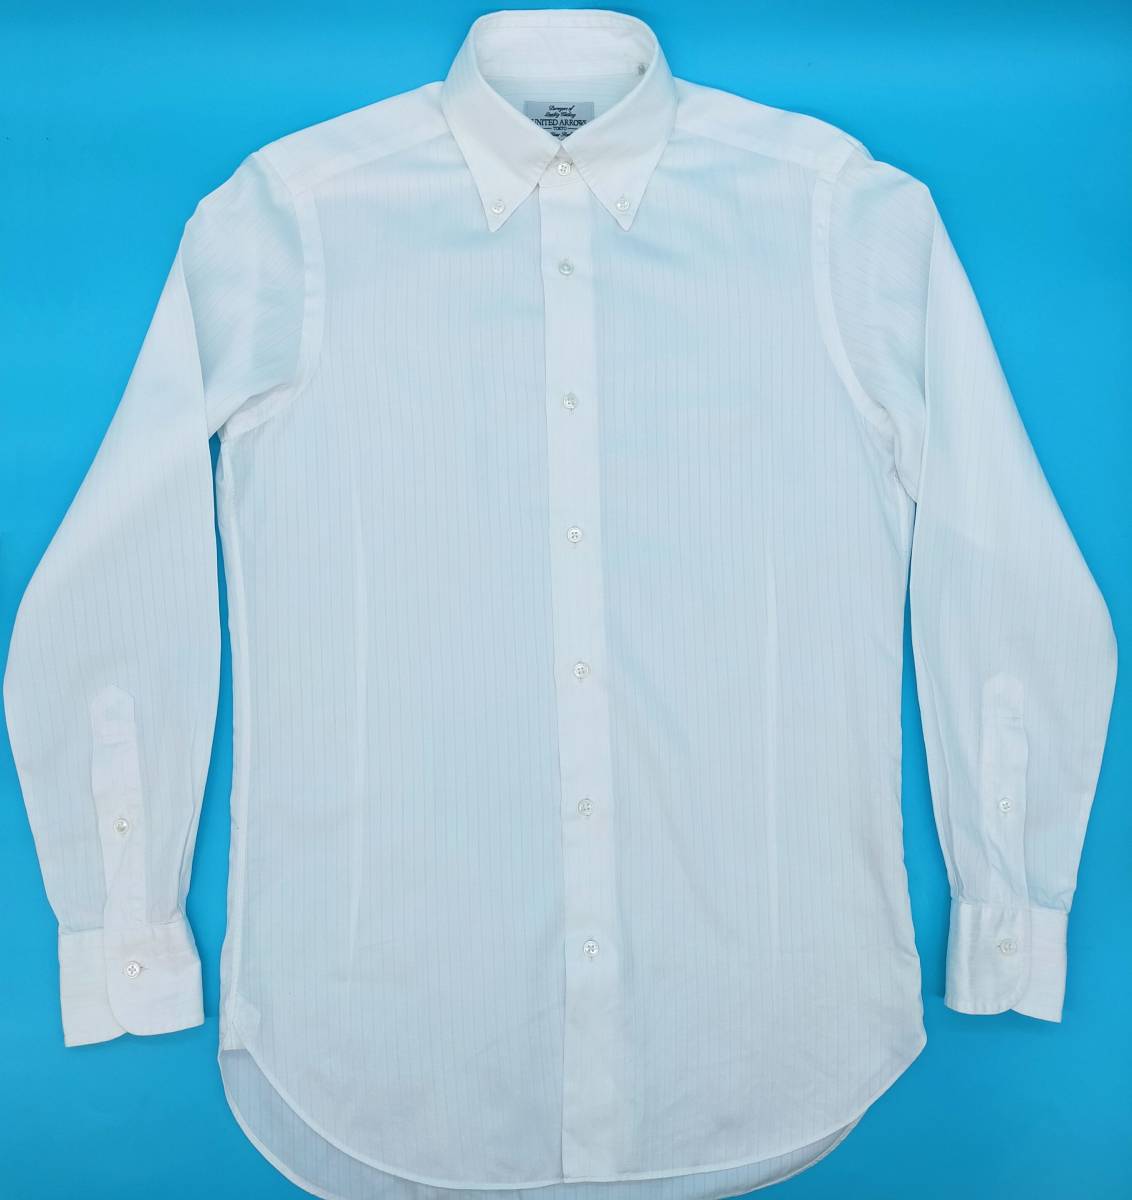 ★［美品］ ユナイテッドアローズ S 36-84 スリムフィット ヘリンボーン ワイシャツ UNITED ARROWS 白の画像1